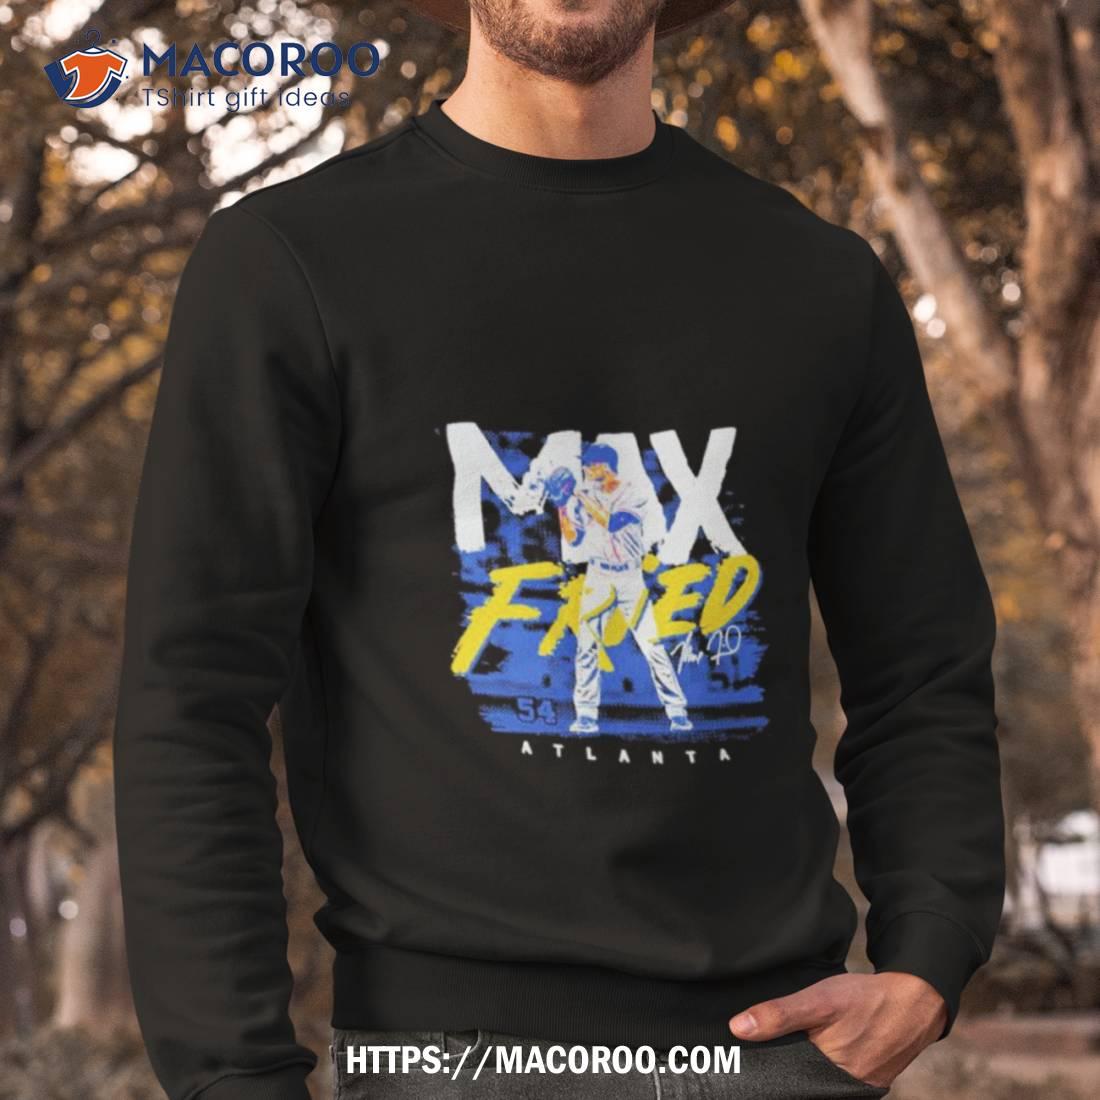 Max Fried 54 Atlanta Braves Mlbpa Signature Shirt